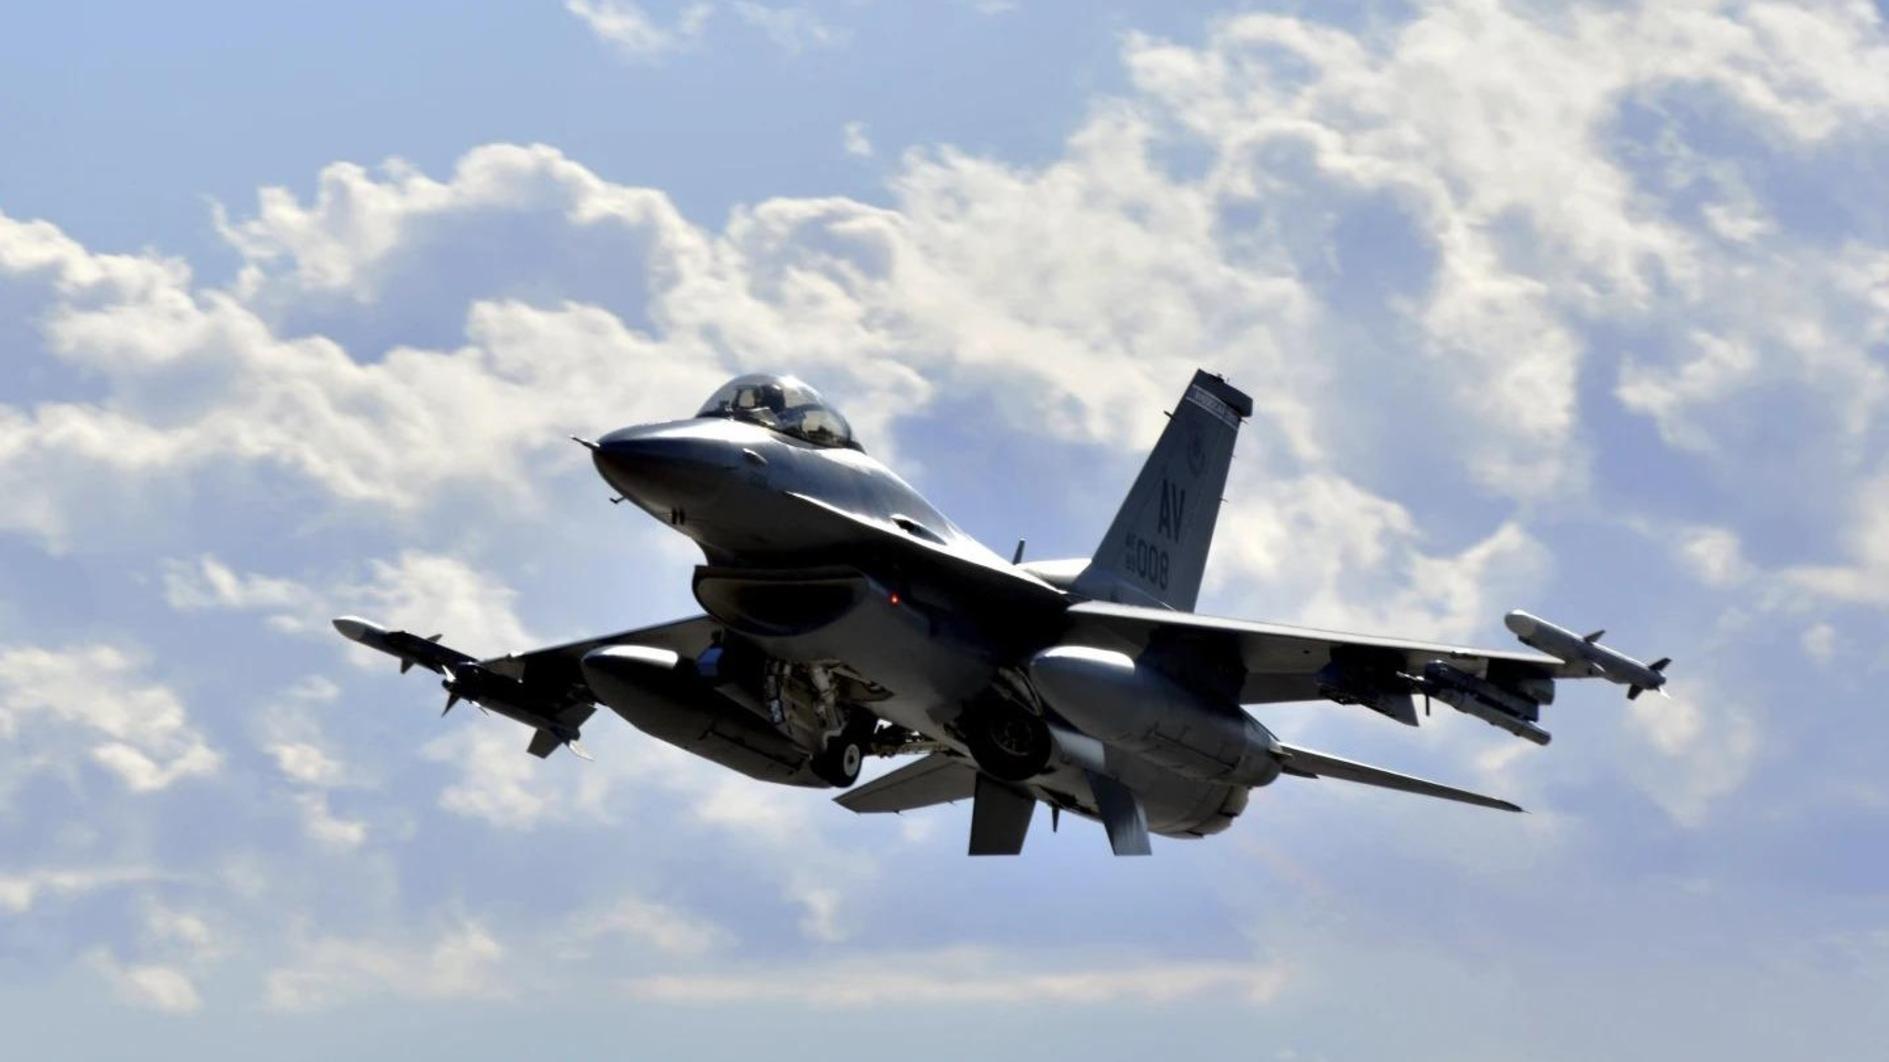 Türkiye verwacht tegen het einde van de maand een F-16-ontwerpaanbod